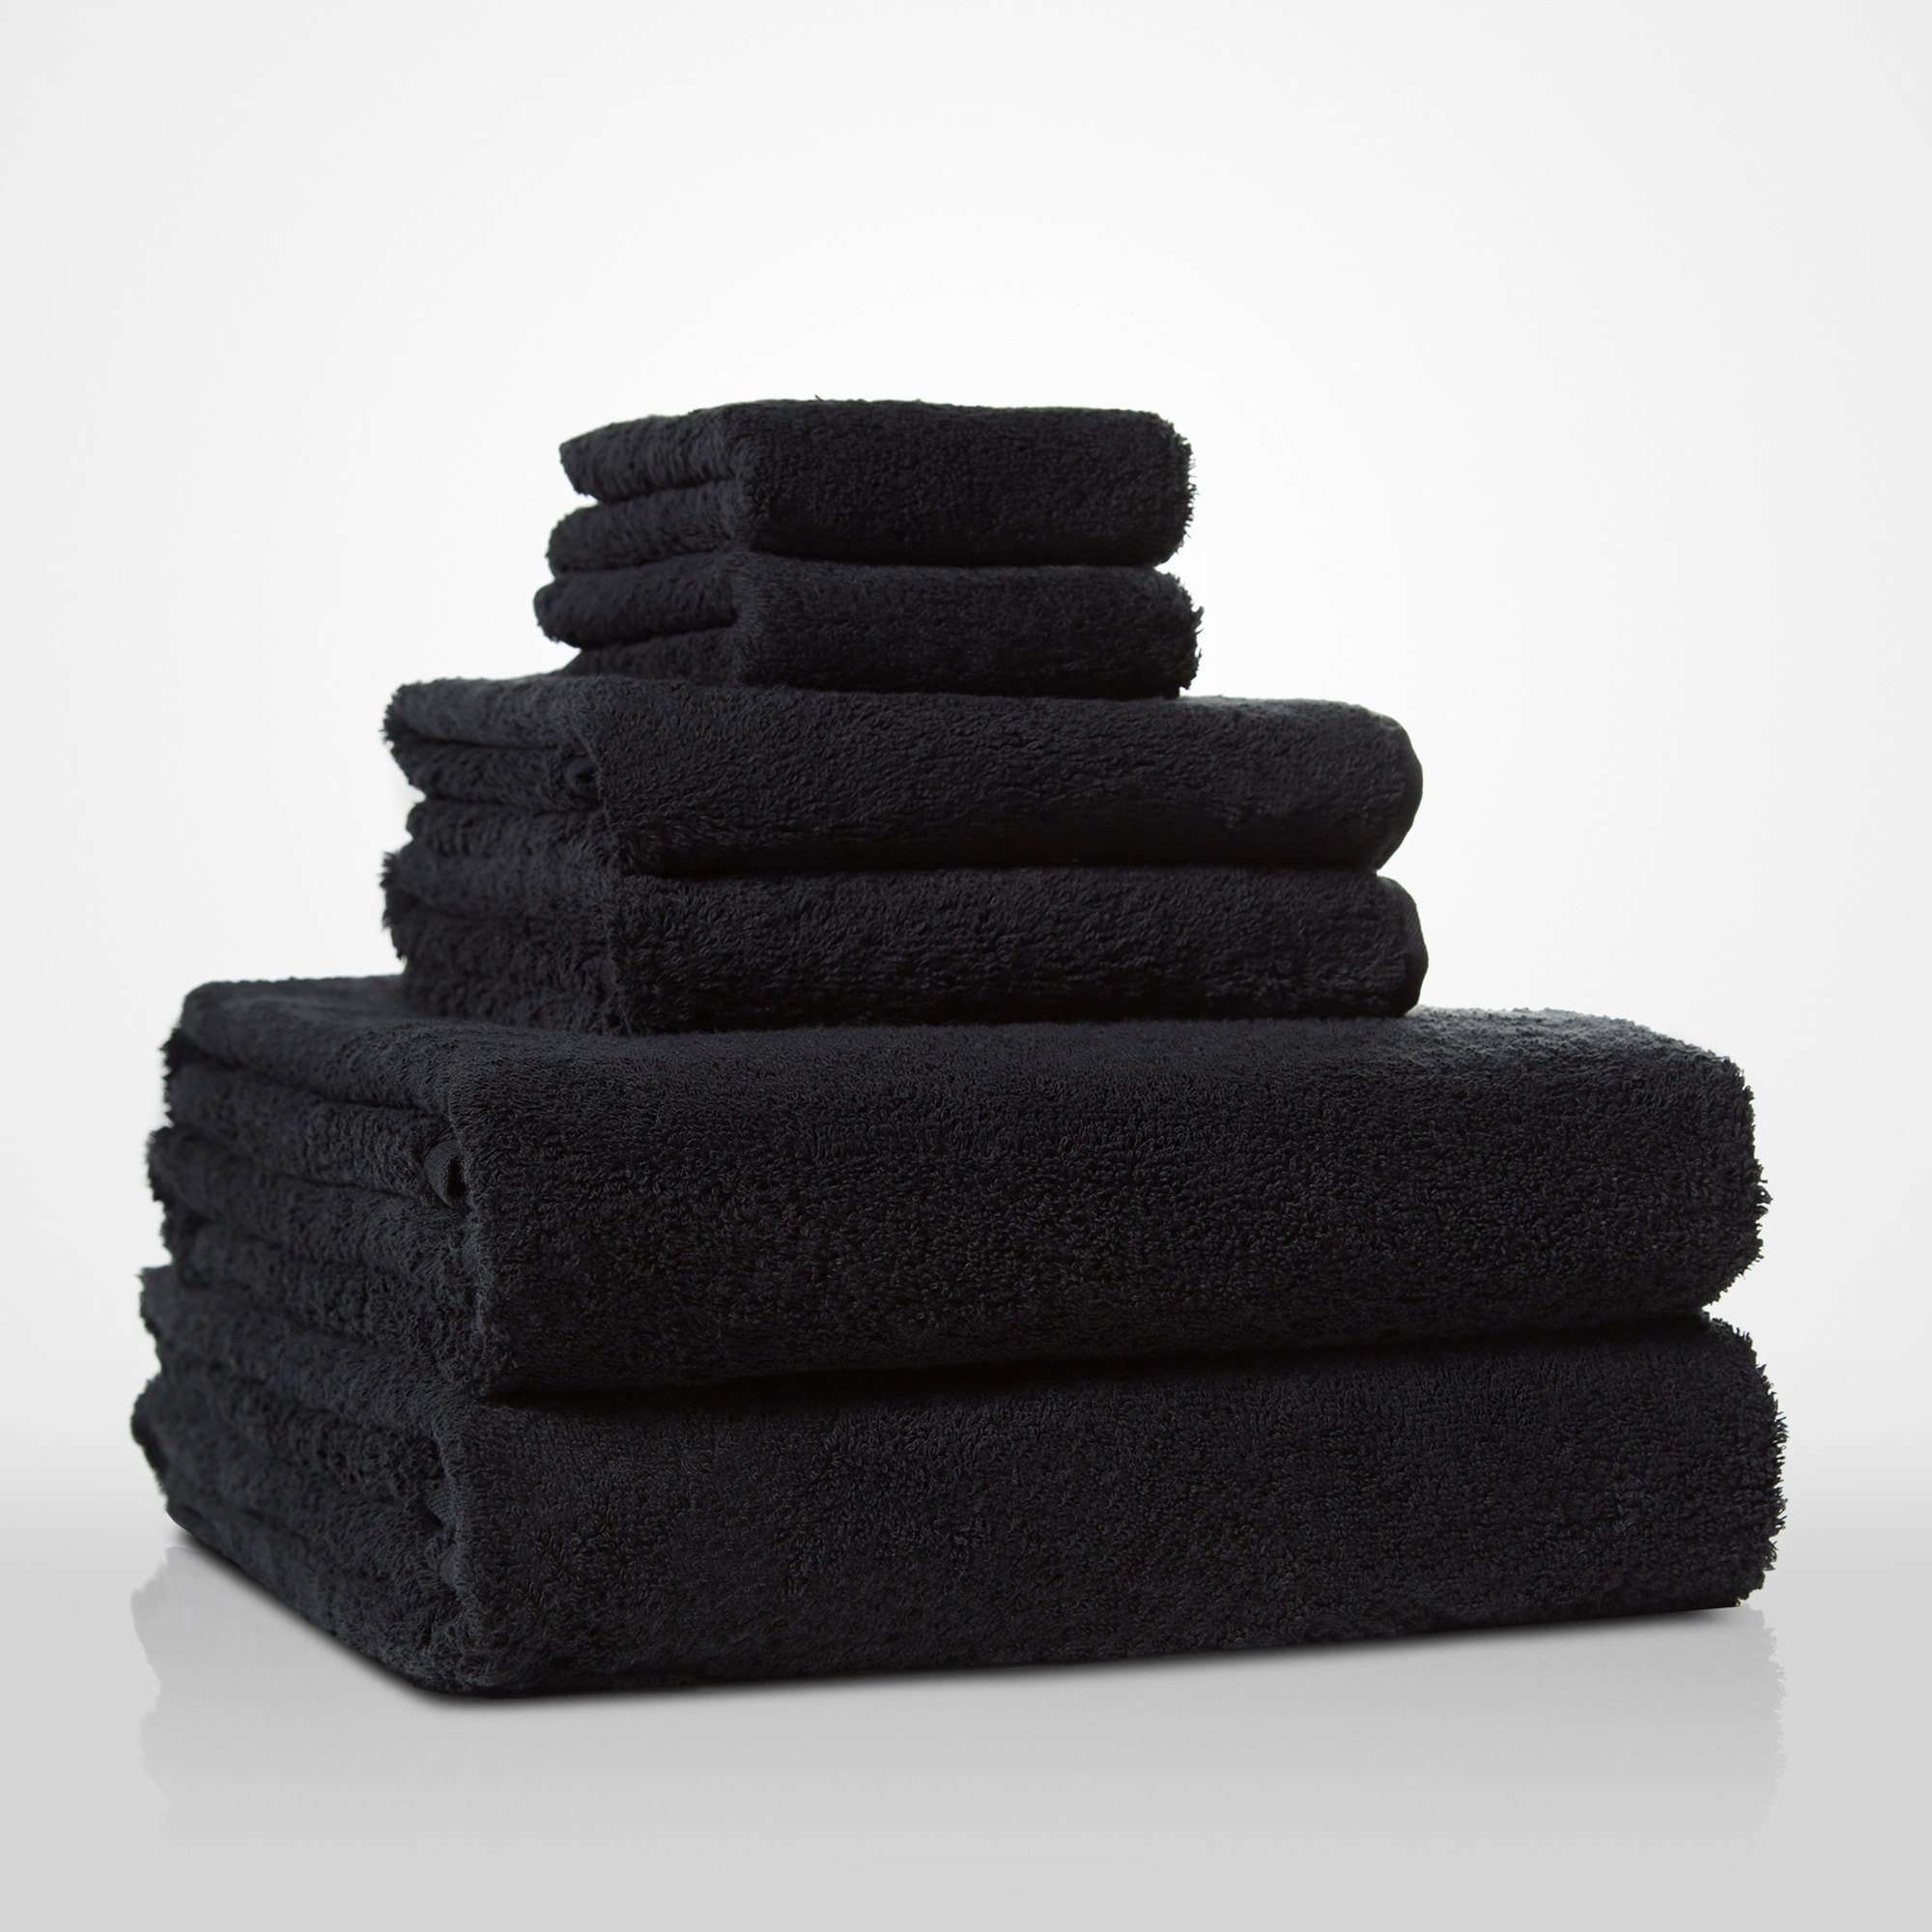 13" x 13" - 100% Turkish Cotton Black Terry Washcloth  - 12 Pack (Dozen)-Robemart.com